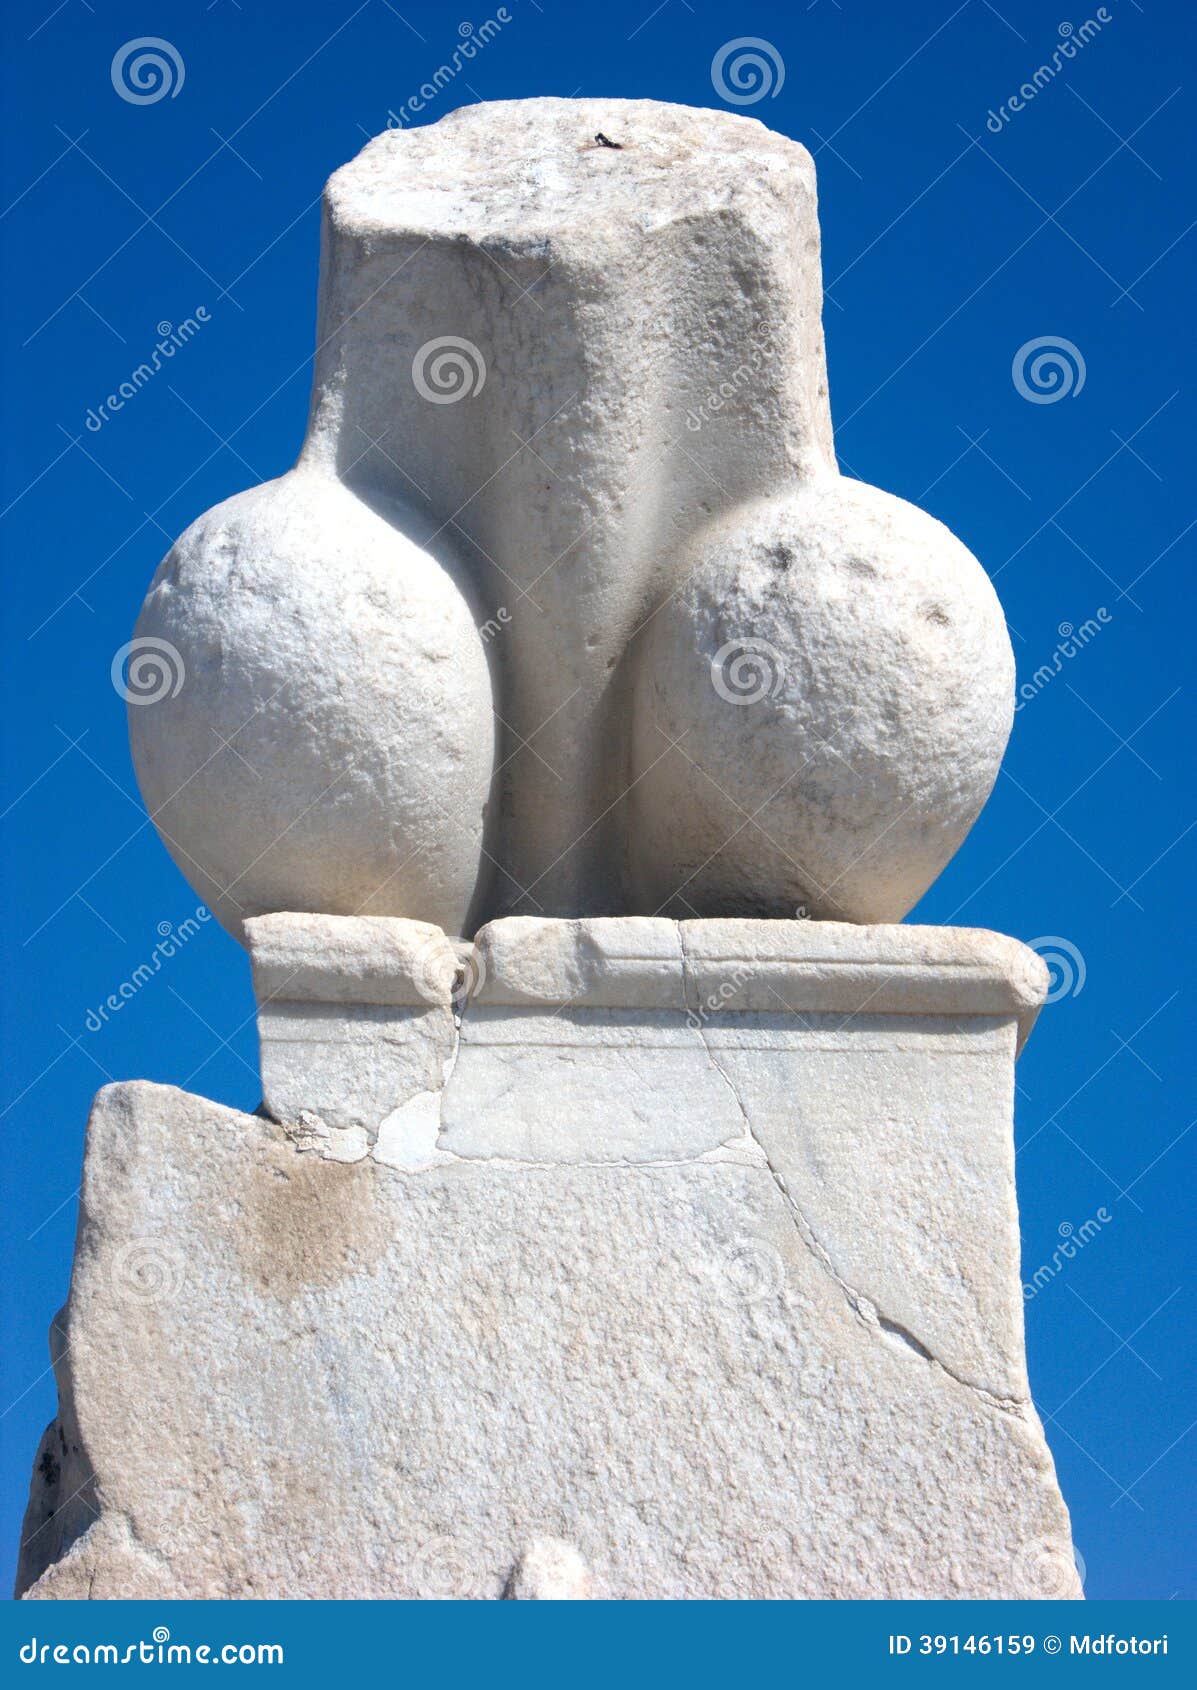 E adevărat că în Ploieşti există un monument funerar în formă de falus?